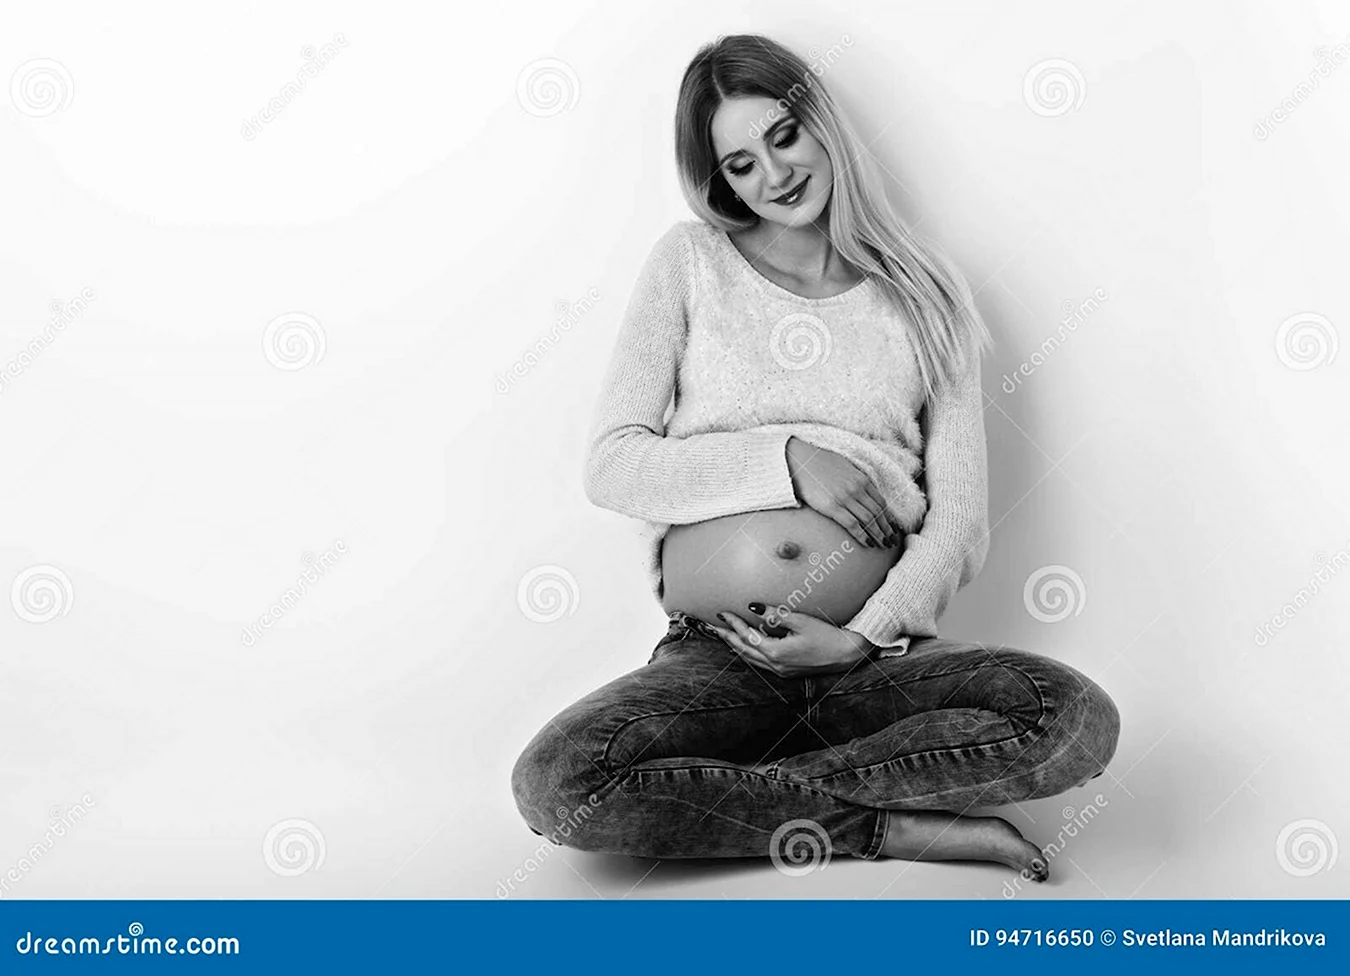 Беременная девушка в джинсах